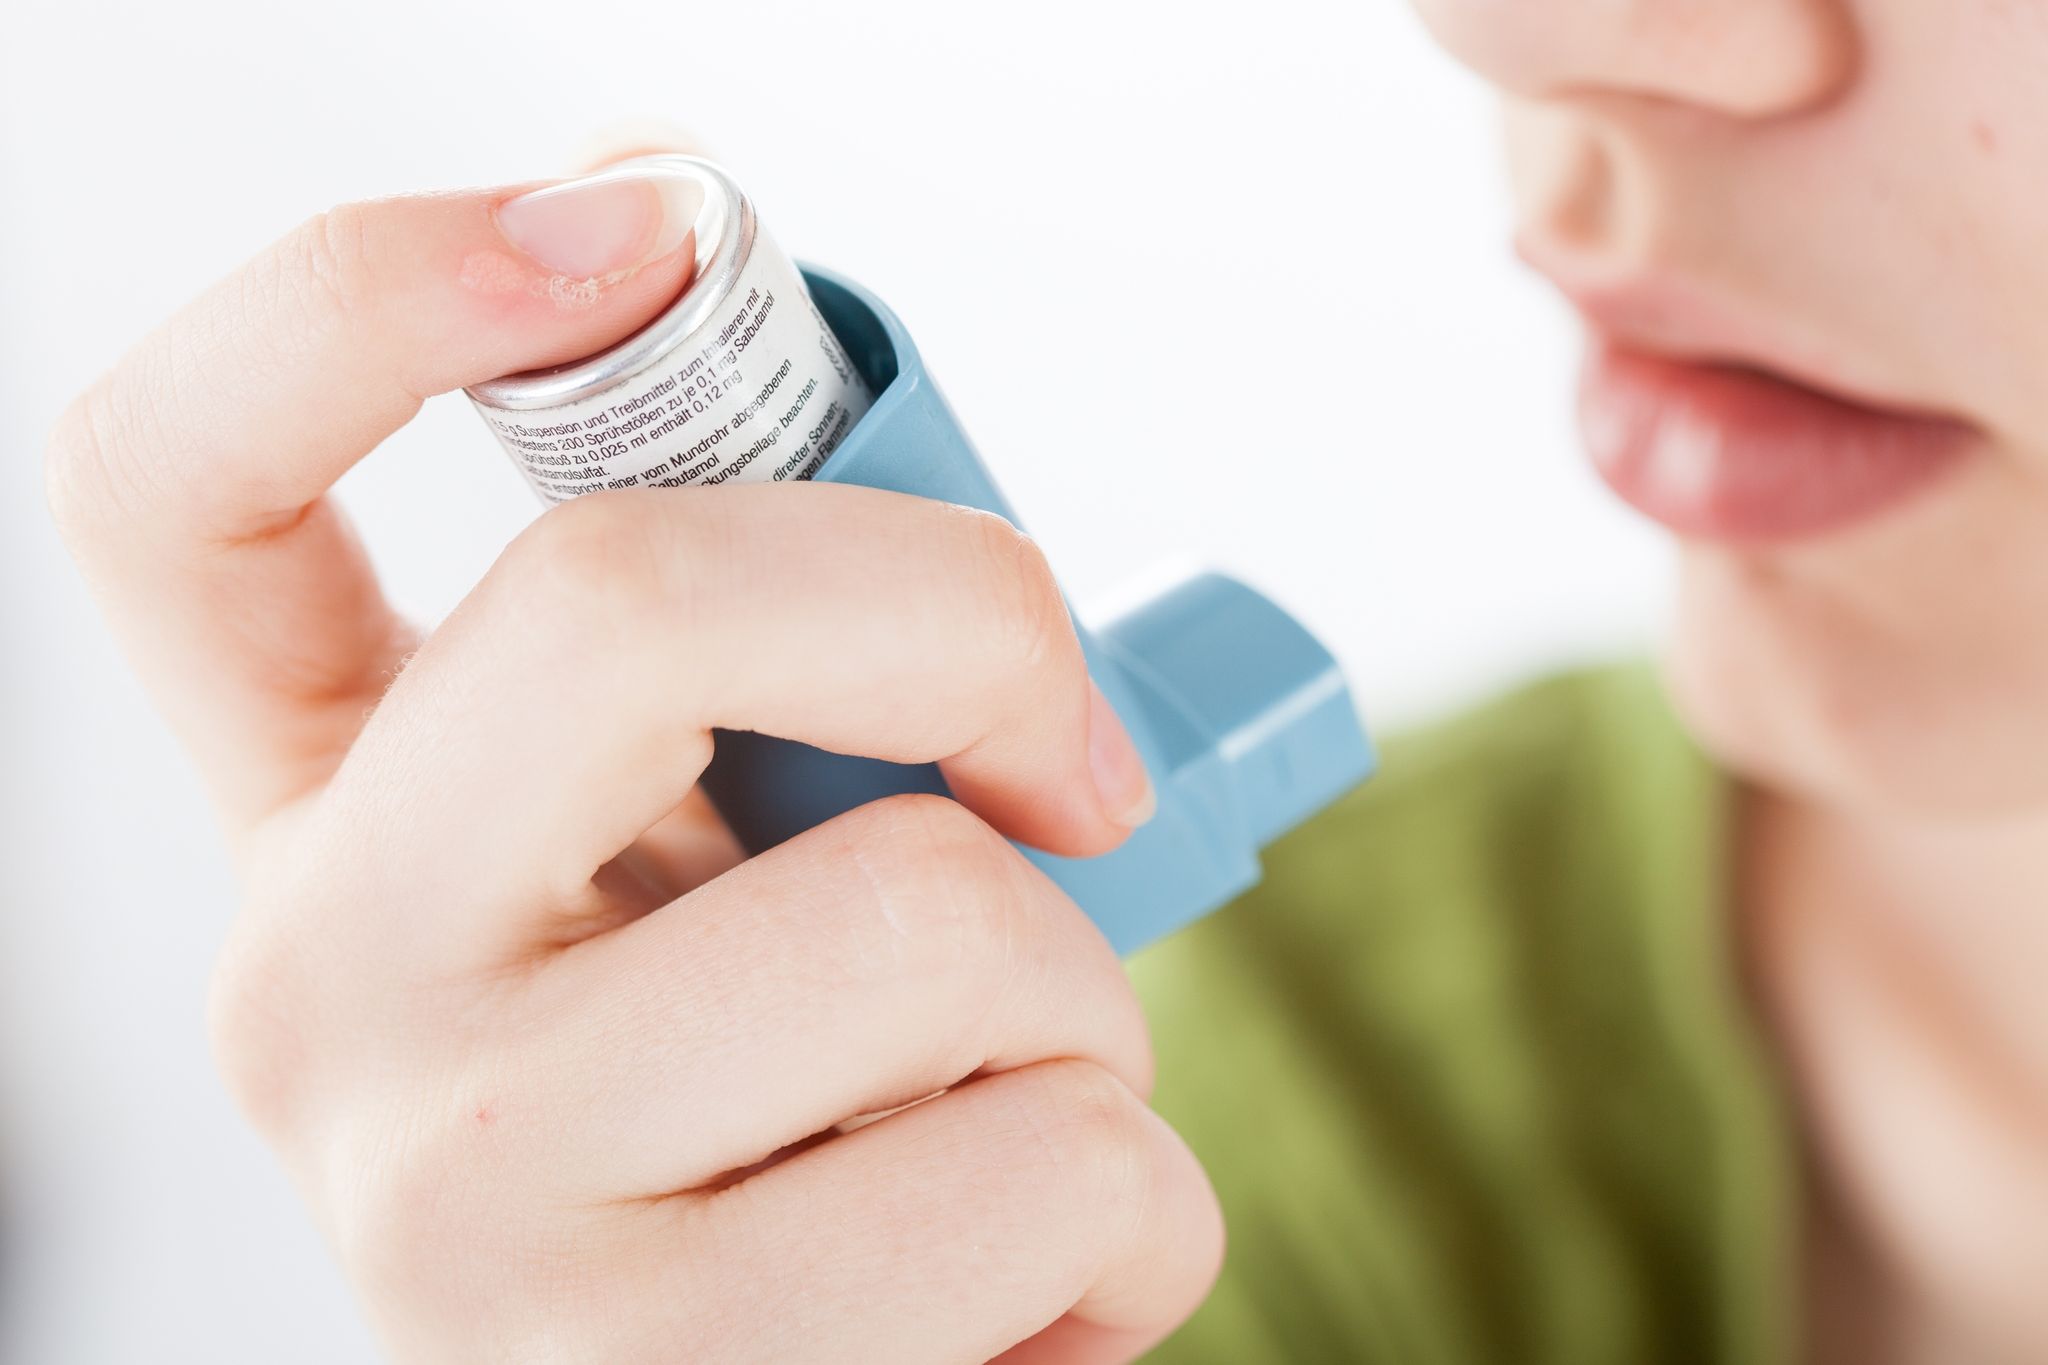 Der richtige Umgang mit dem Asthmaspray ist wichtig - sonst kommt der Wirkstoff nicht dort an, wo er helfen muss.